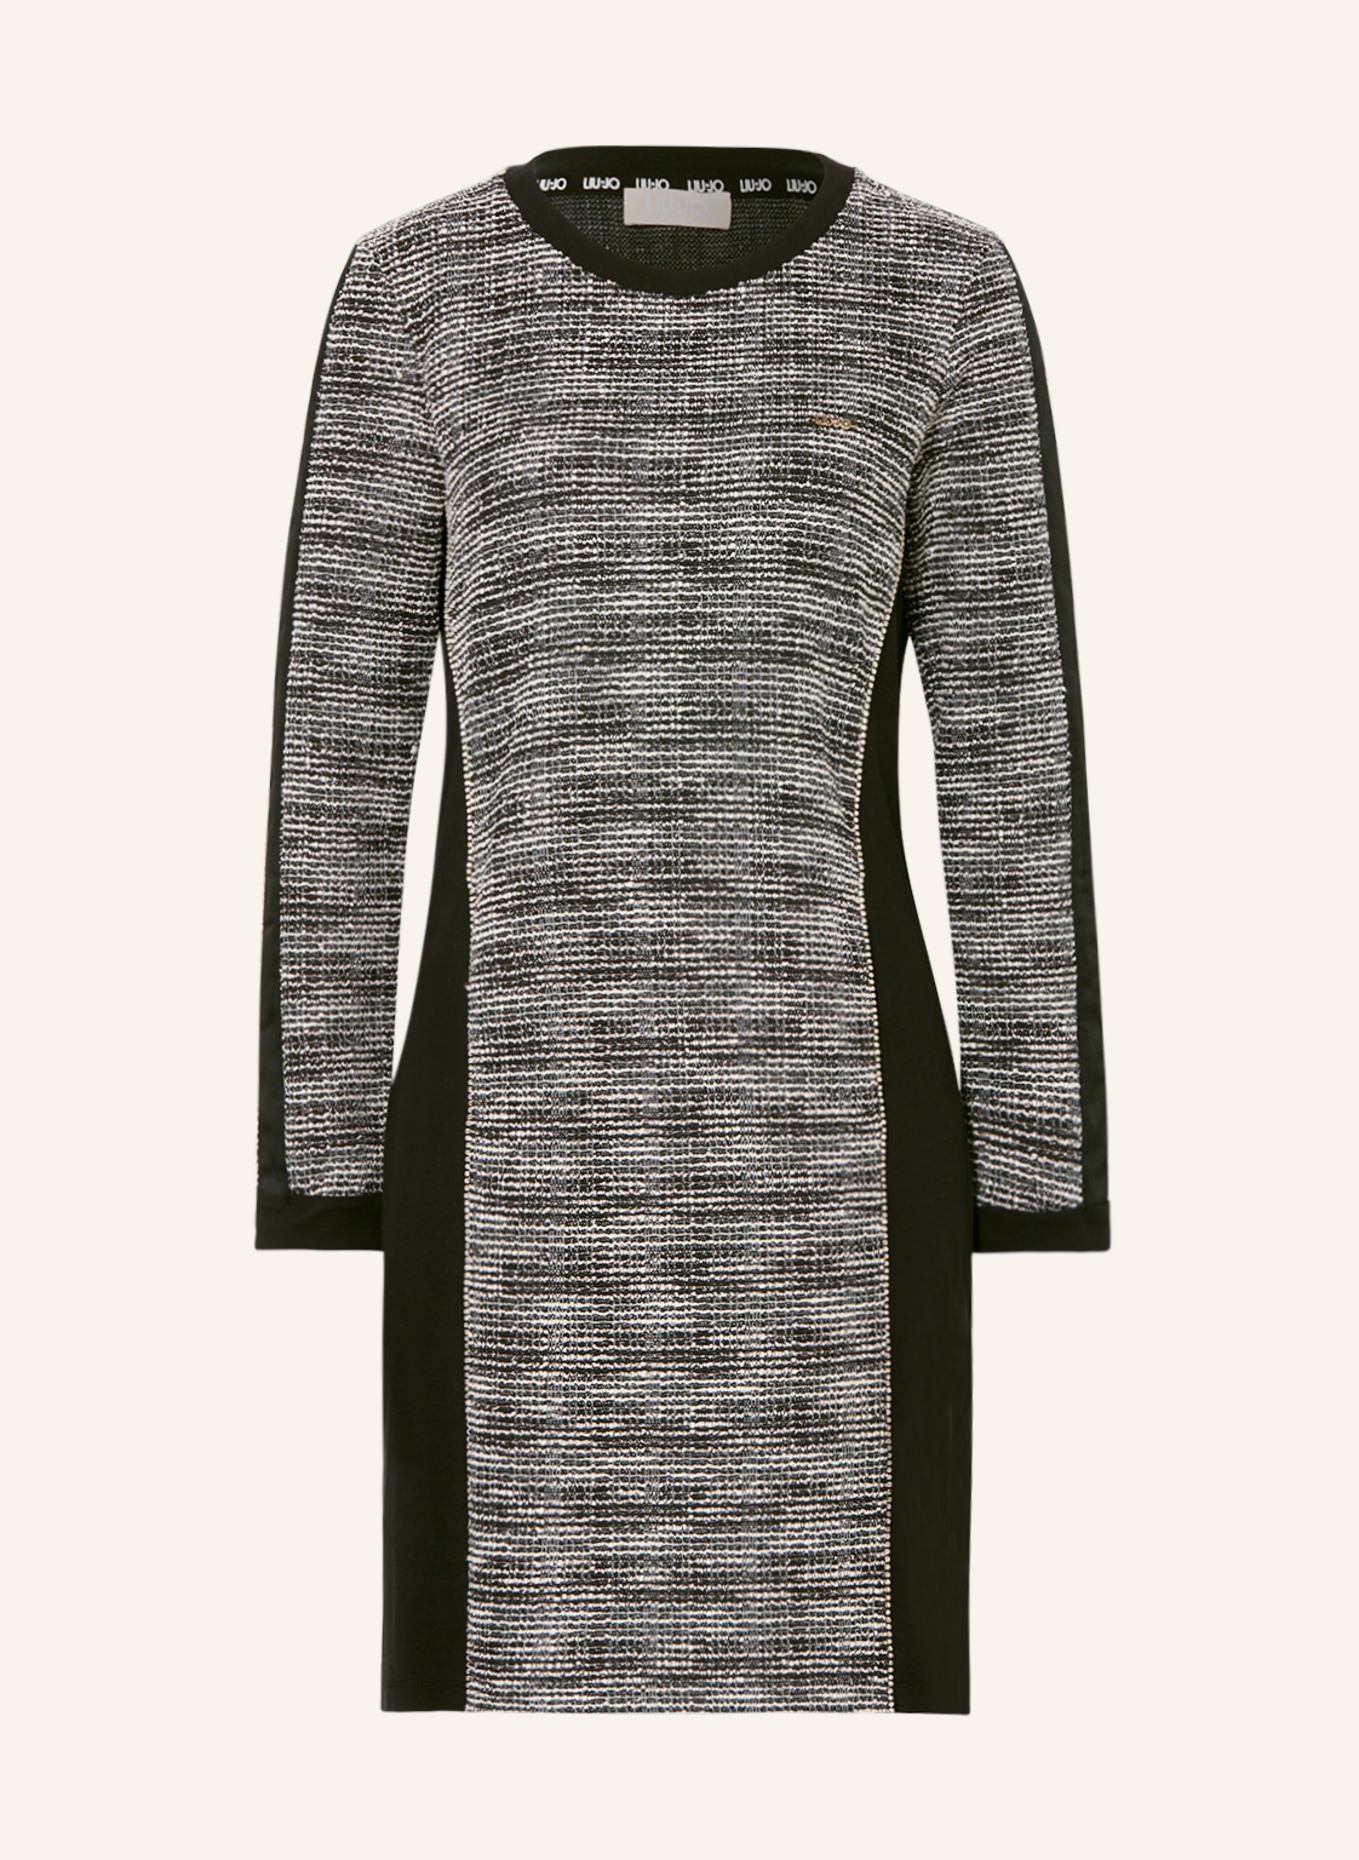 LIU JO Kleid im Materialmix mit Schmucksteinen, Farbe: SCHWARZ/ WEISS (Bild 1)